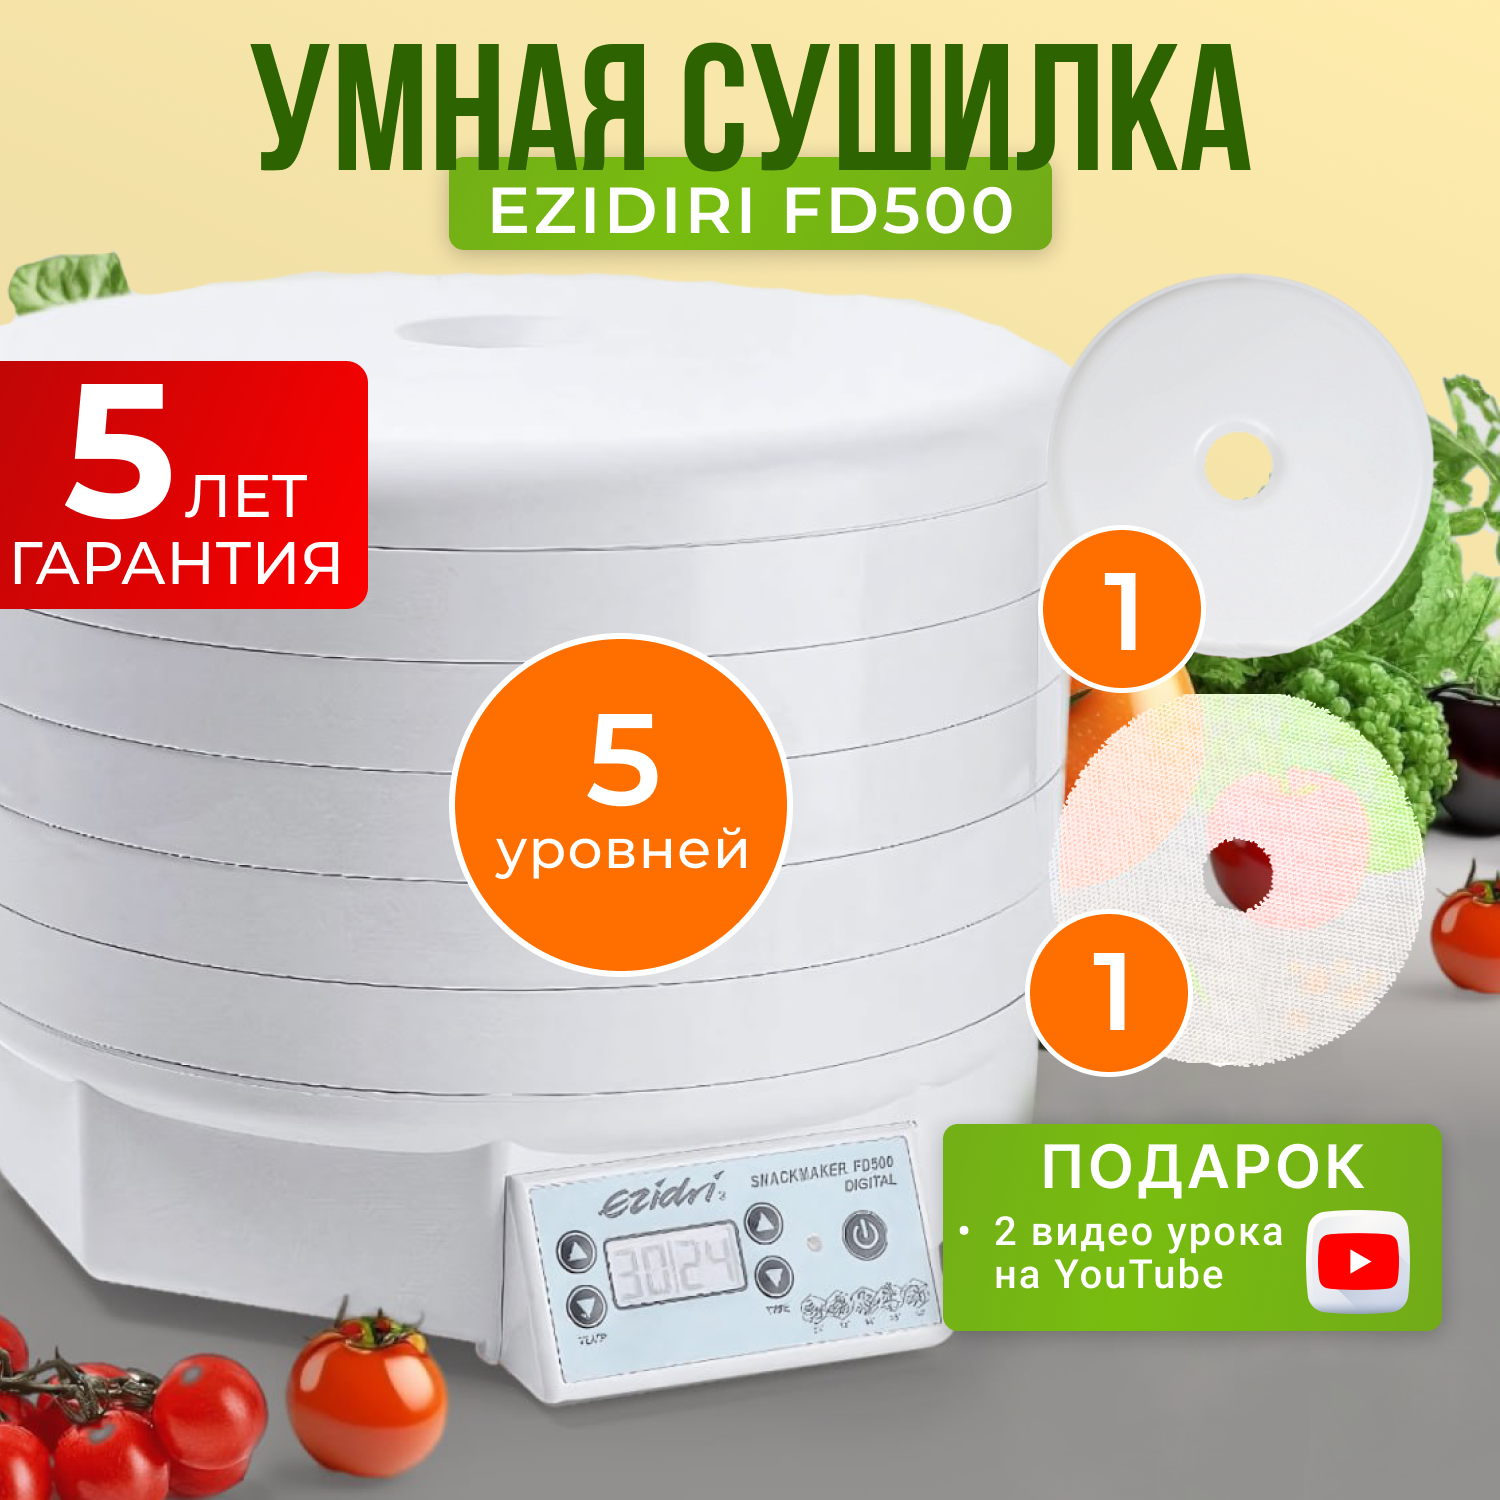 Сушилка для овощей и фруктов Ezidri snackmaker FD500 Digital сушилка для овощей и фруктов ezidri fd500 digital с 10 поддонами и 10 листами